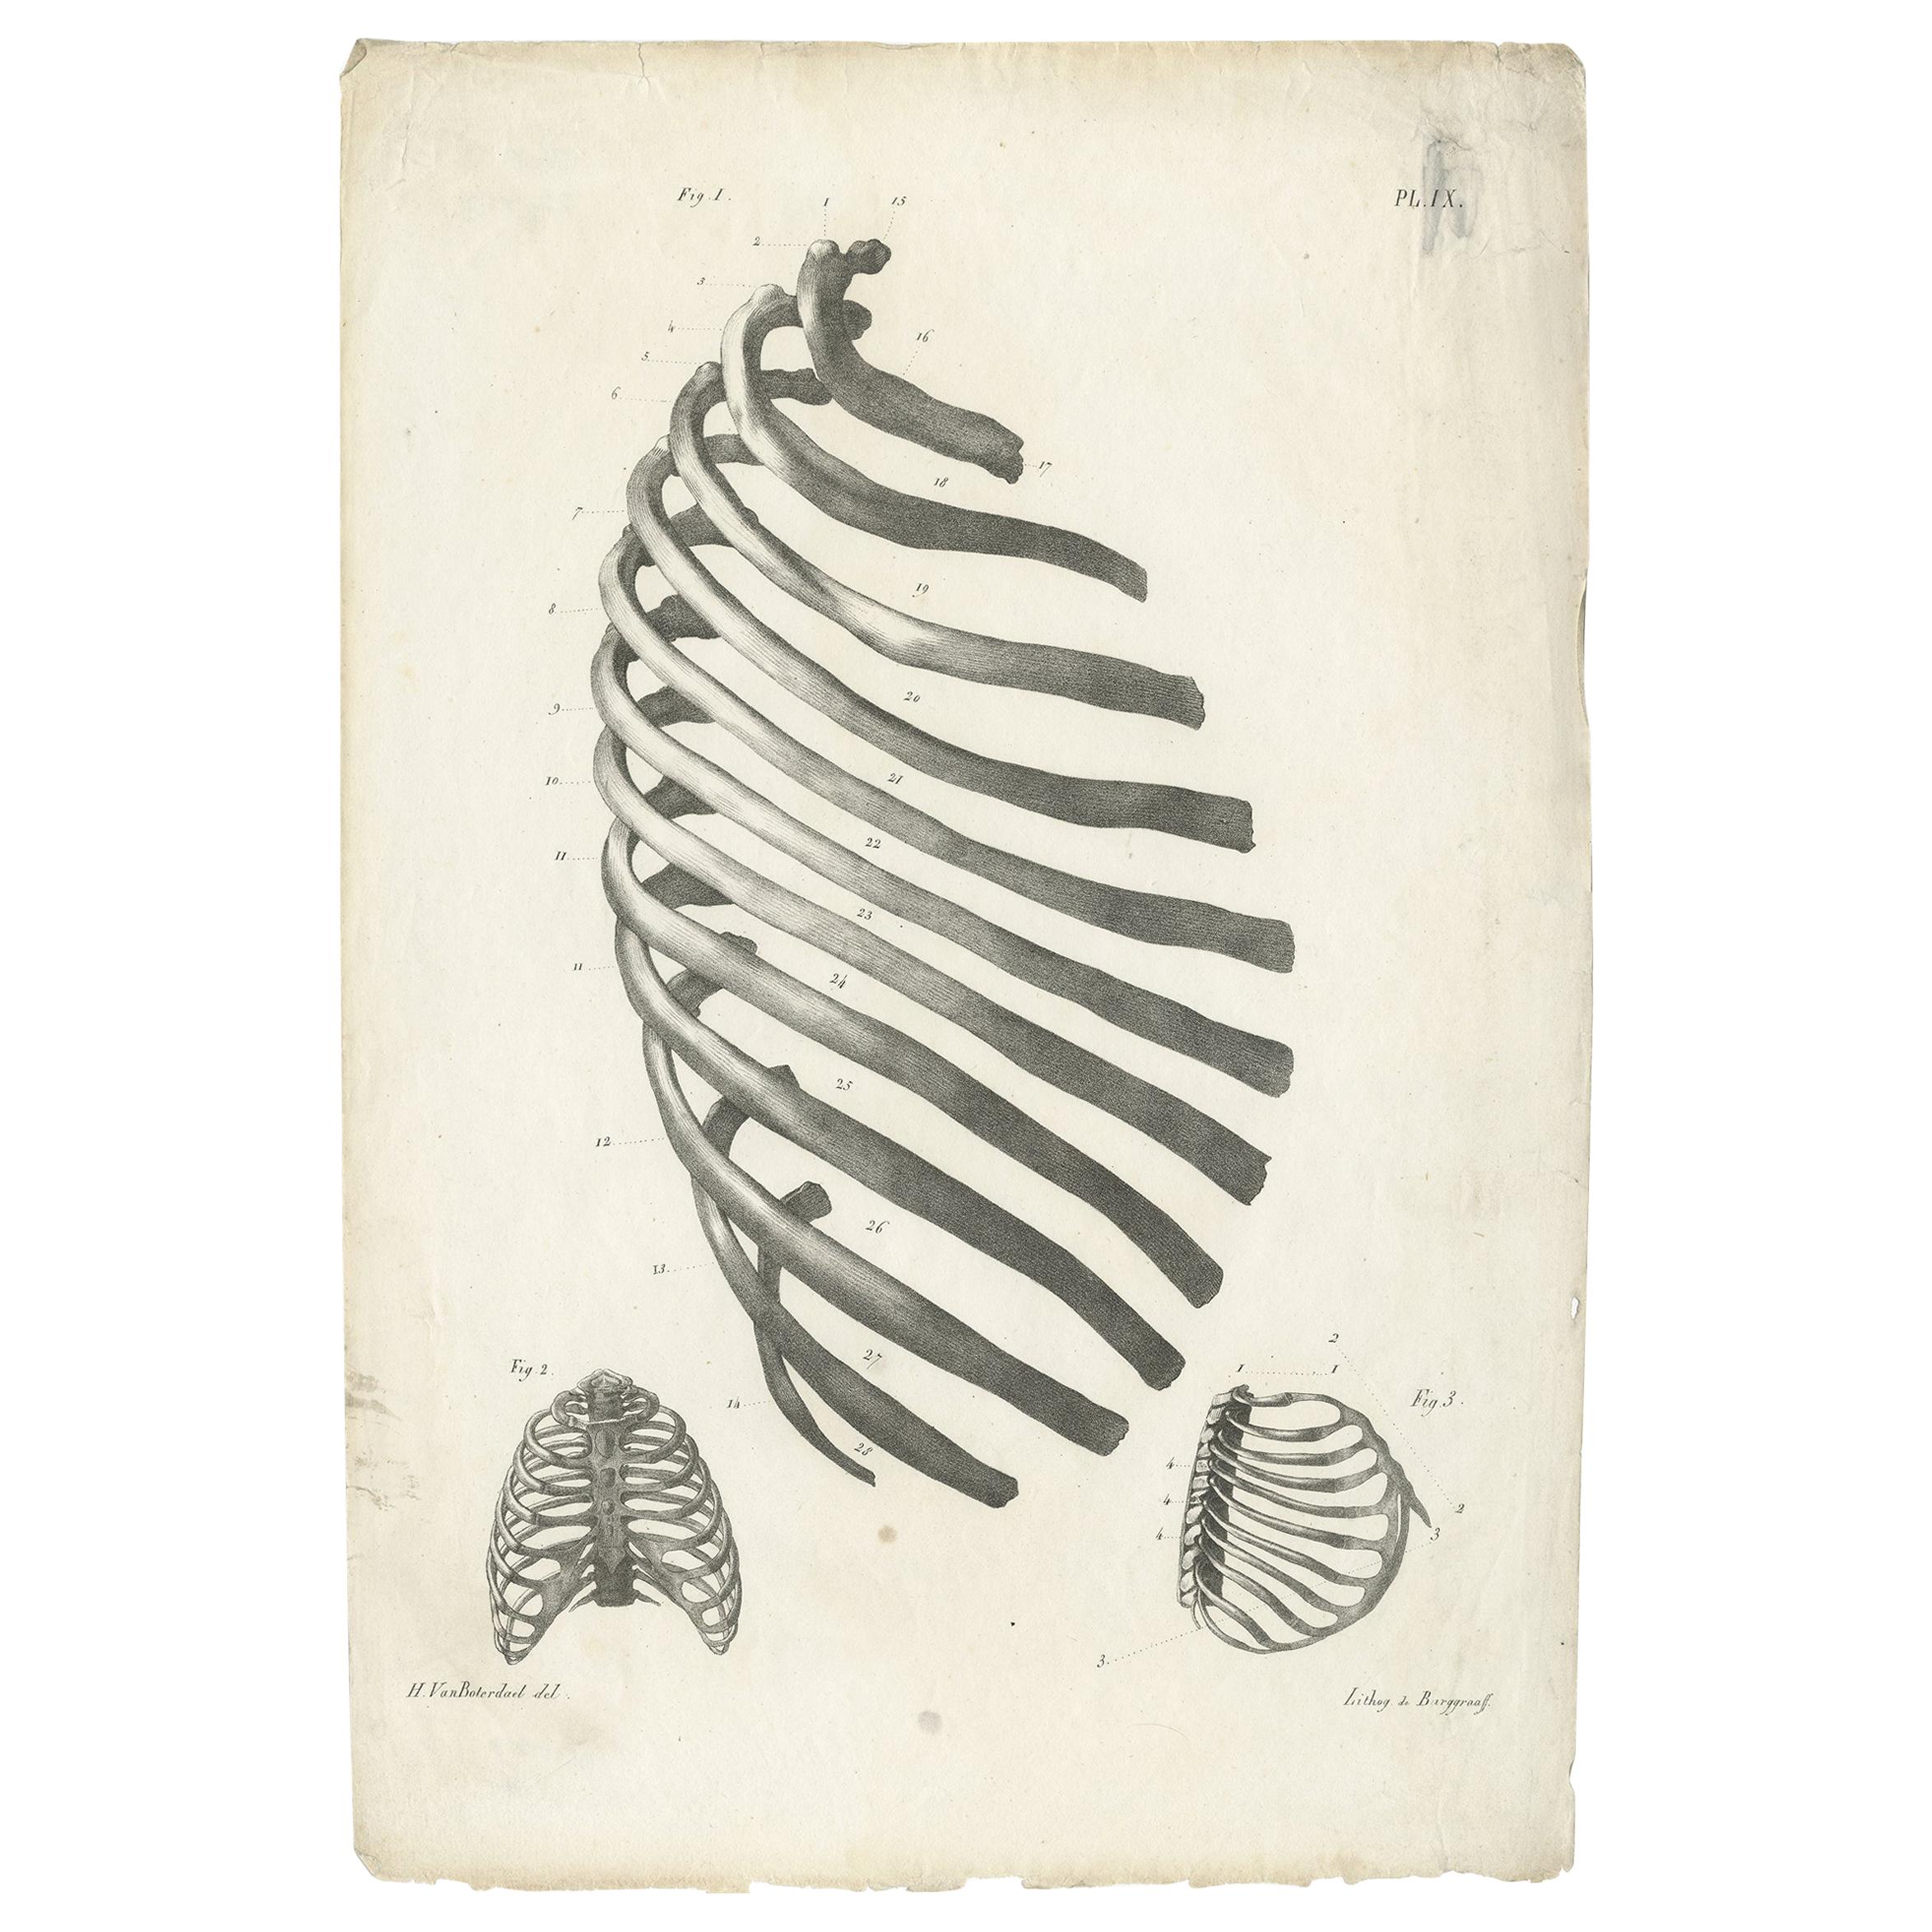 Pl. IX Antiker Anatomie / Medizinischer Druck des Rippenkäfigs von Cloquet '1821